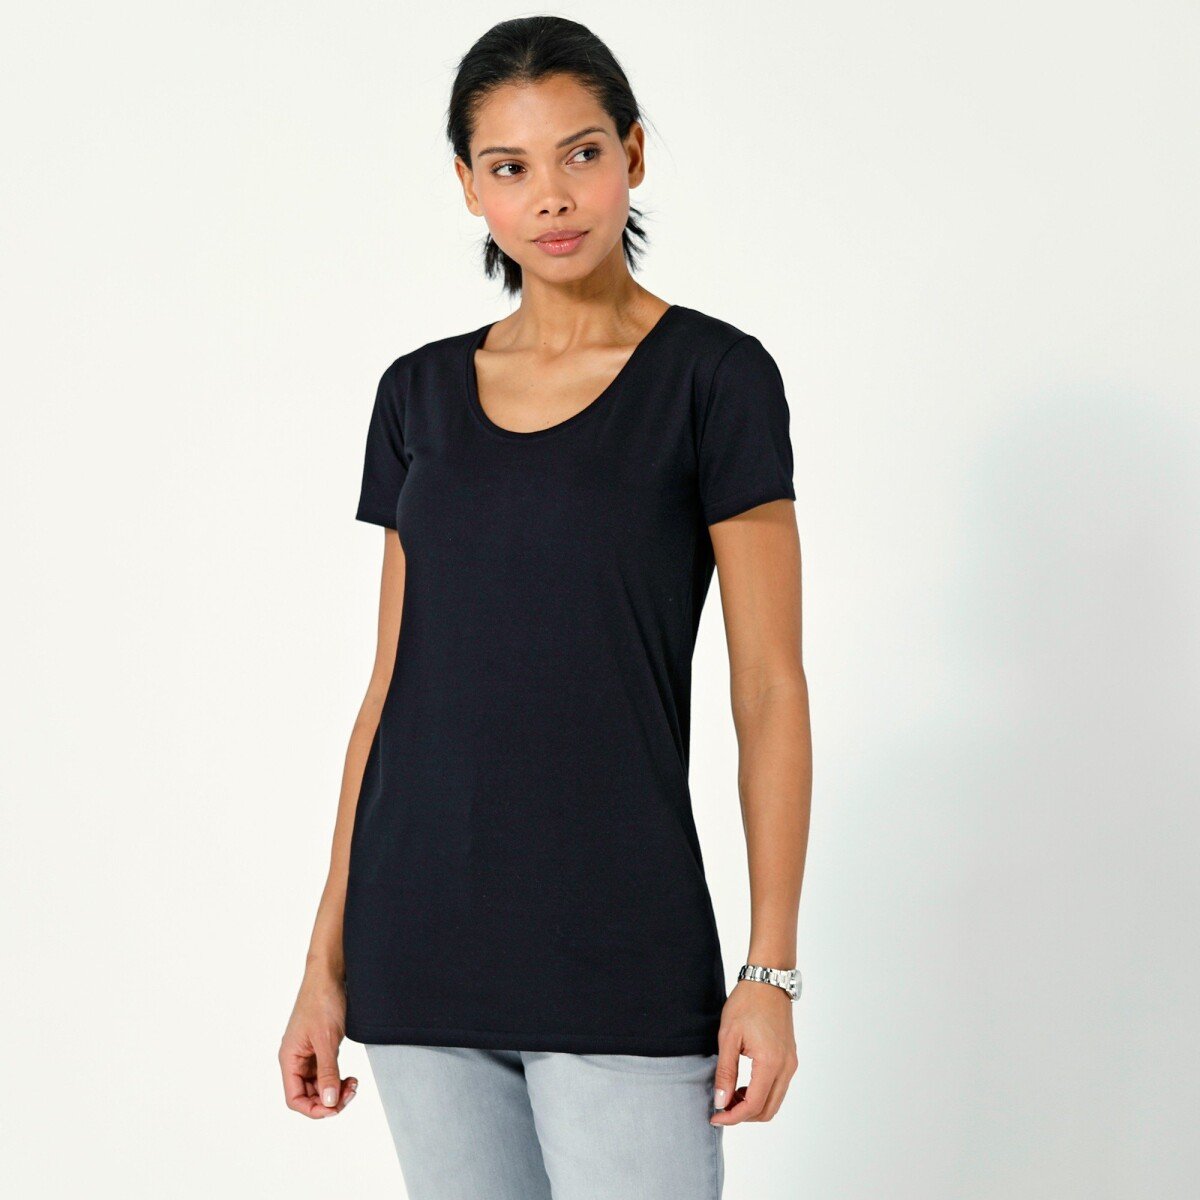 Jednofarebné tričko s krátkymi rukávmi, z bio bavlny, eco-friendly čierna 34 36